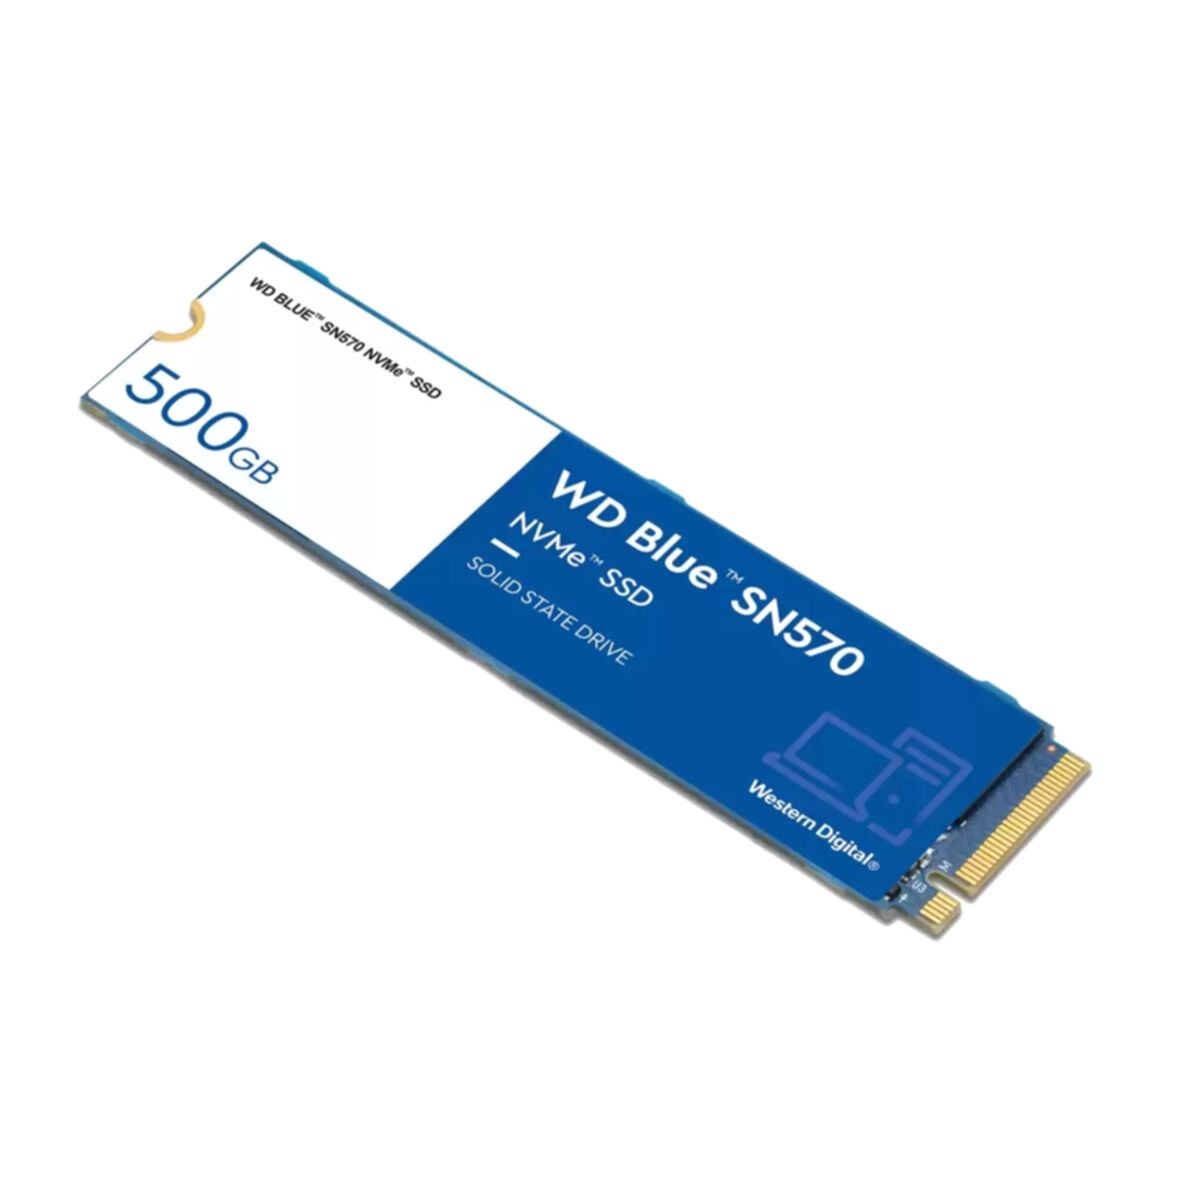 DIGITAL WESTERN 500 SSD, WD Blue SN570, GB, intern